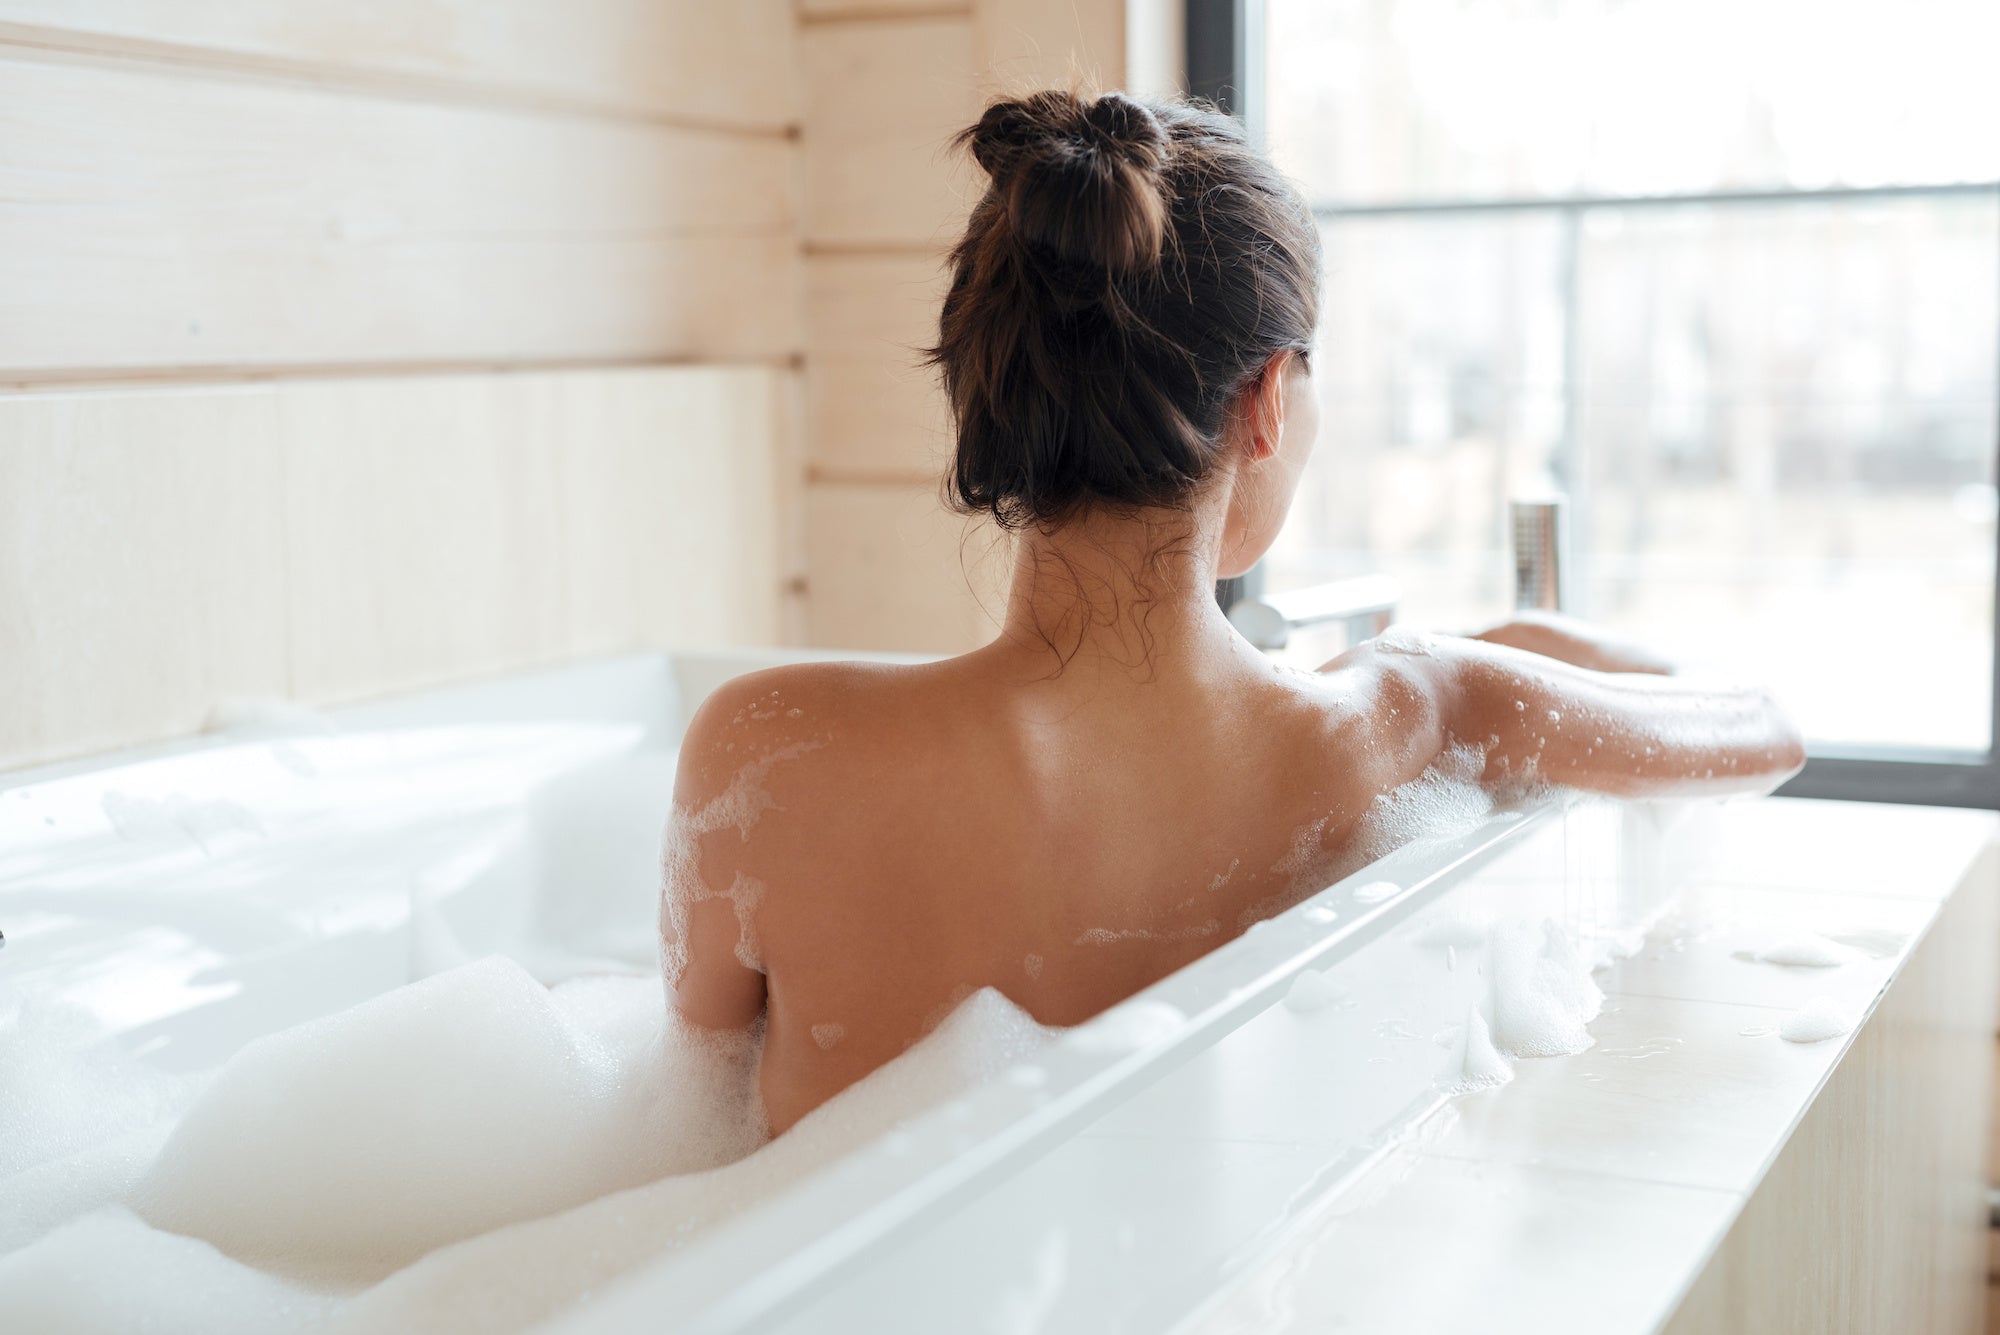 Woman enjoys bubble bath